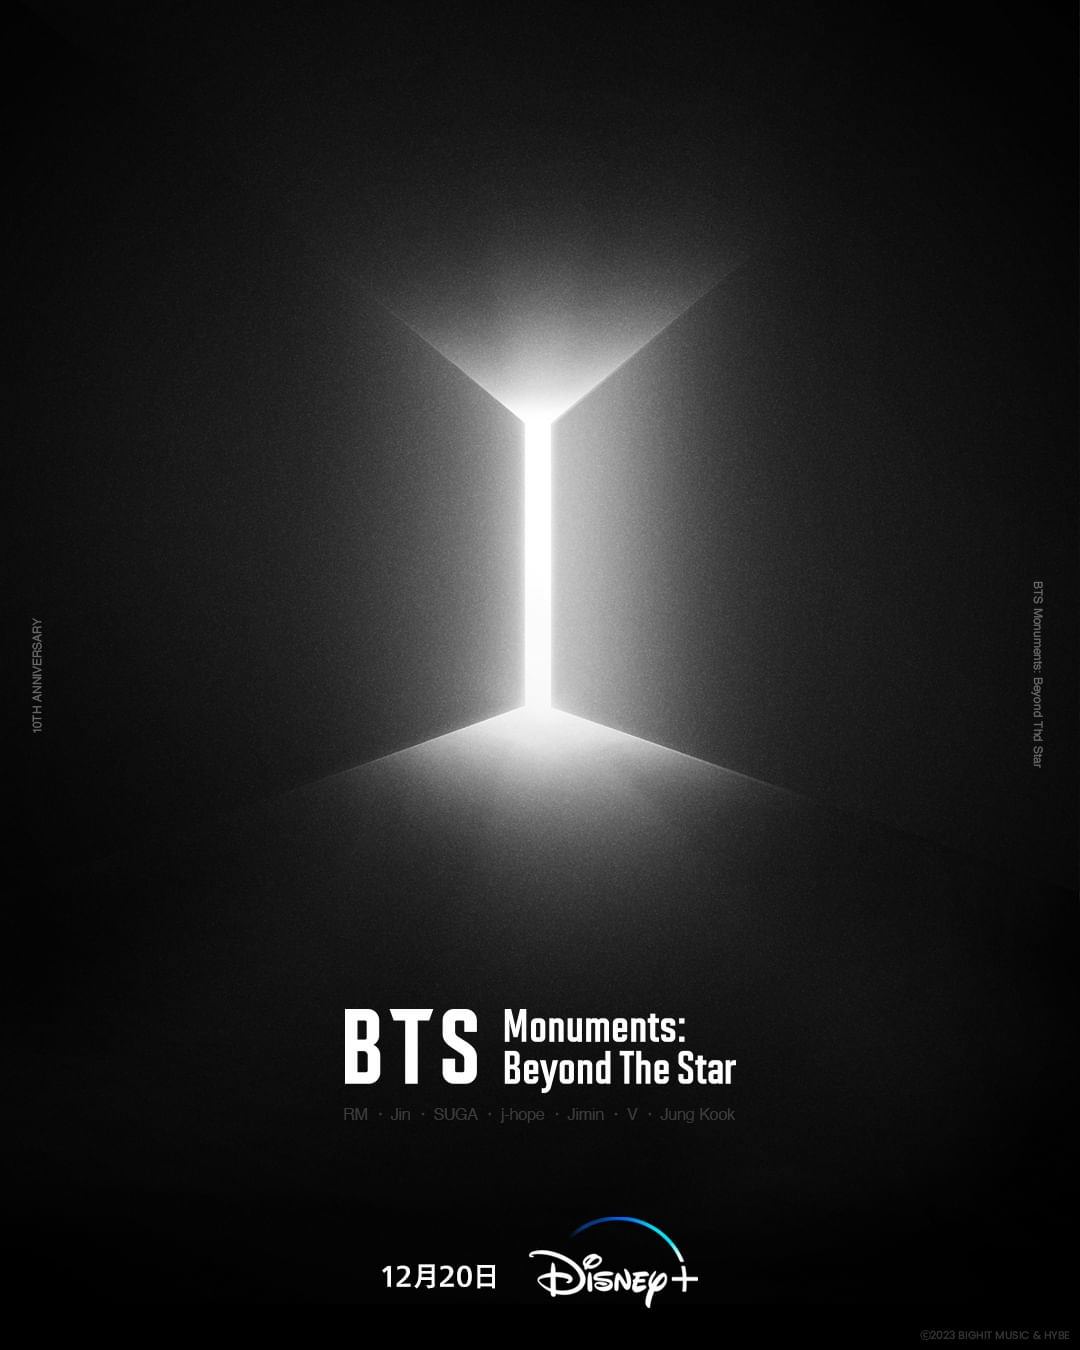 Disney+影集《BTS Monuments: Beyond The Star》